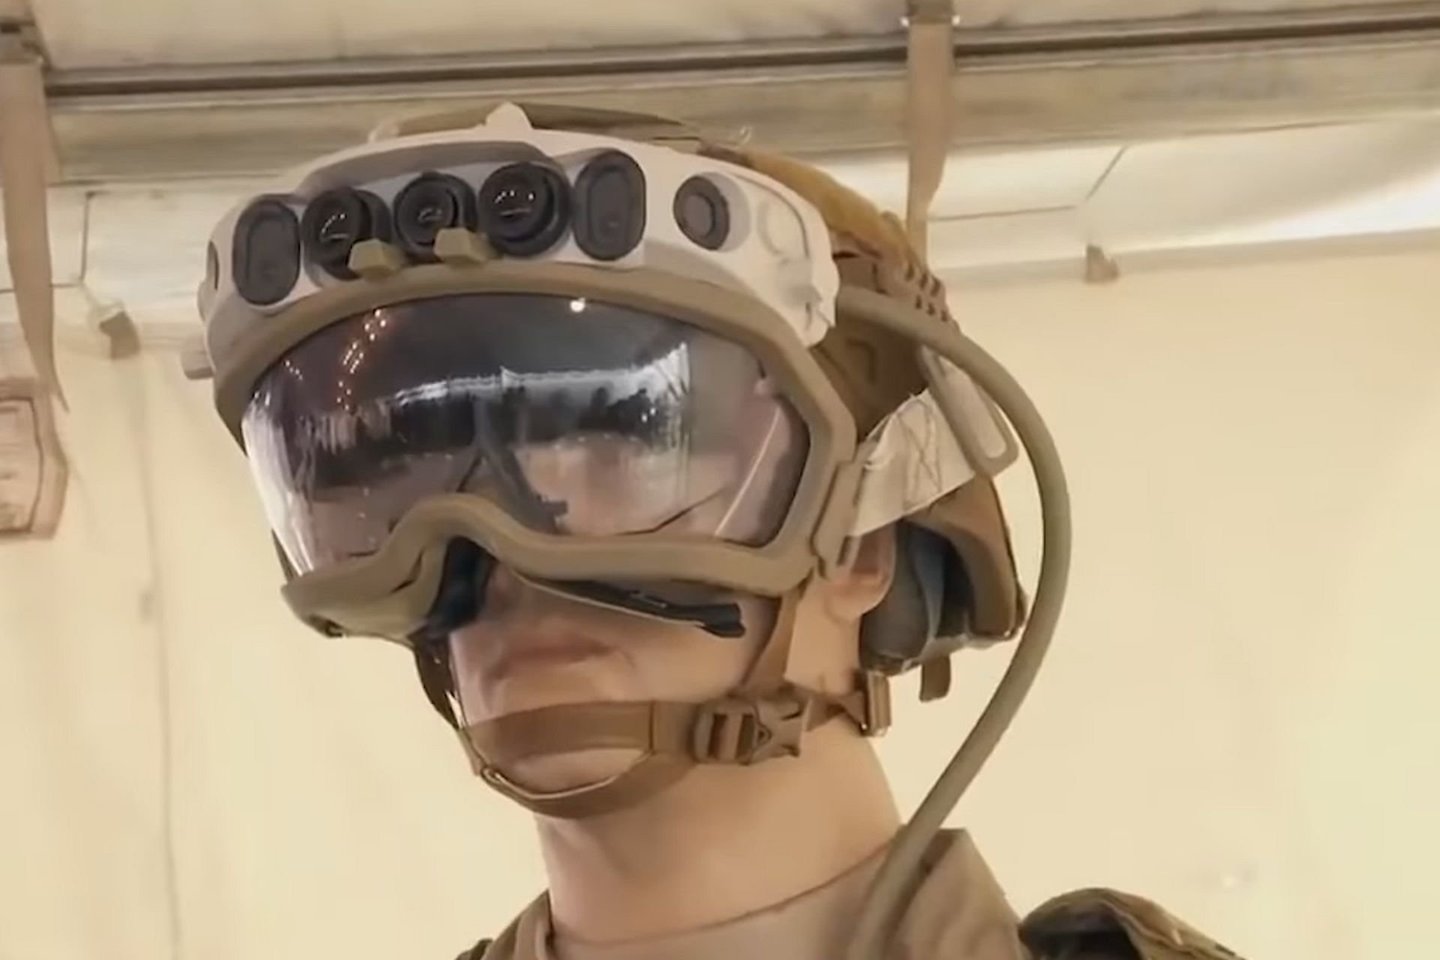  Jungtinių Valstijų armijai kuriami nauji akiniai, leidžiantys kareiviams matyti „kiaurai“ kovinių transporto priemonių sienas.<br> Stopkadras